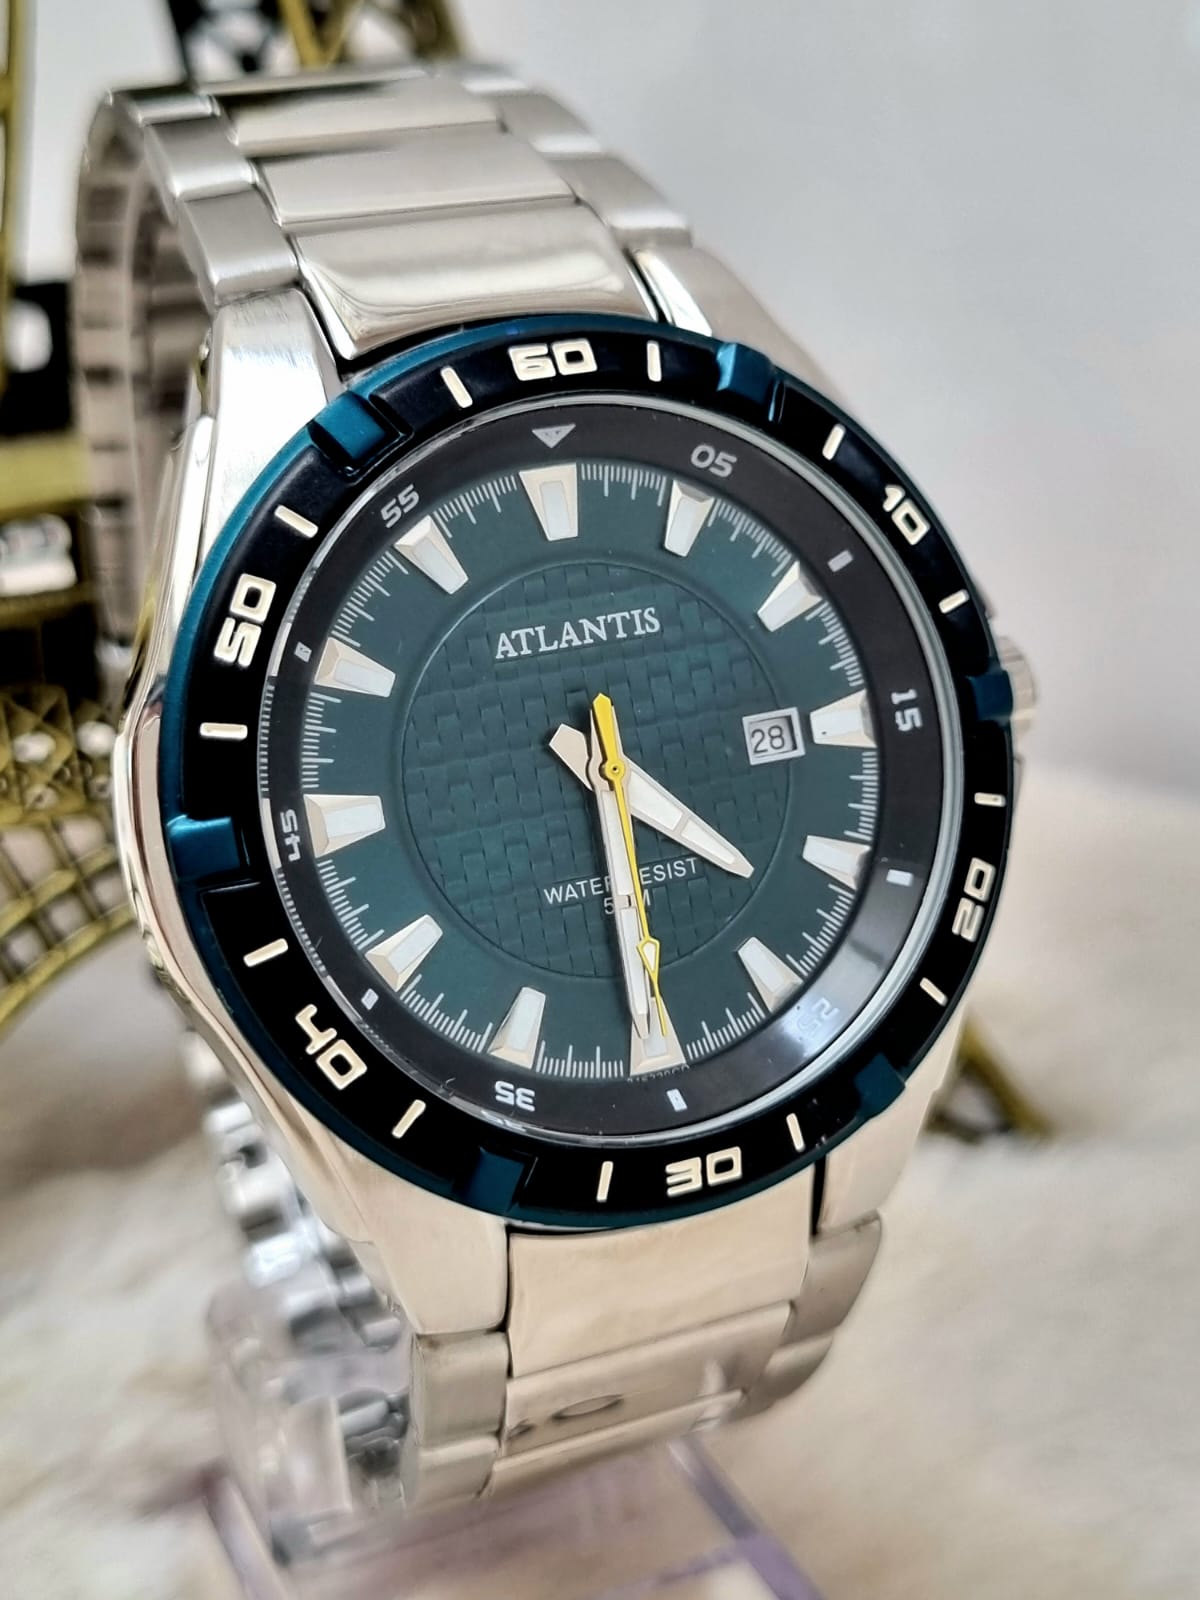 Relógio Masculino Prata Atlantis G3163